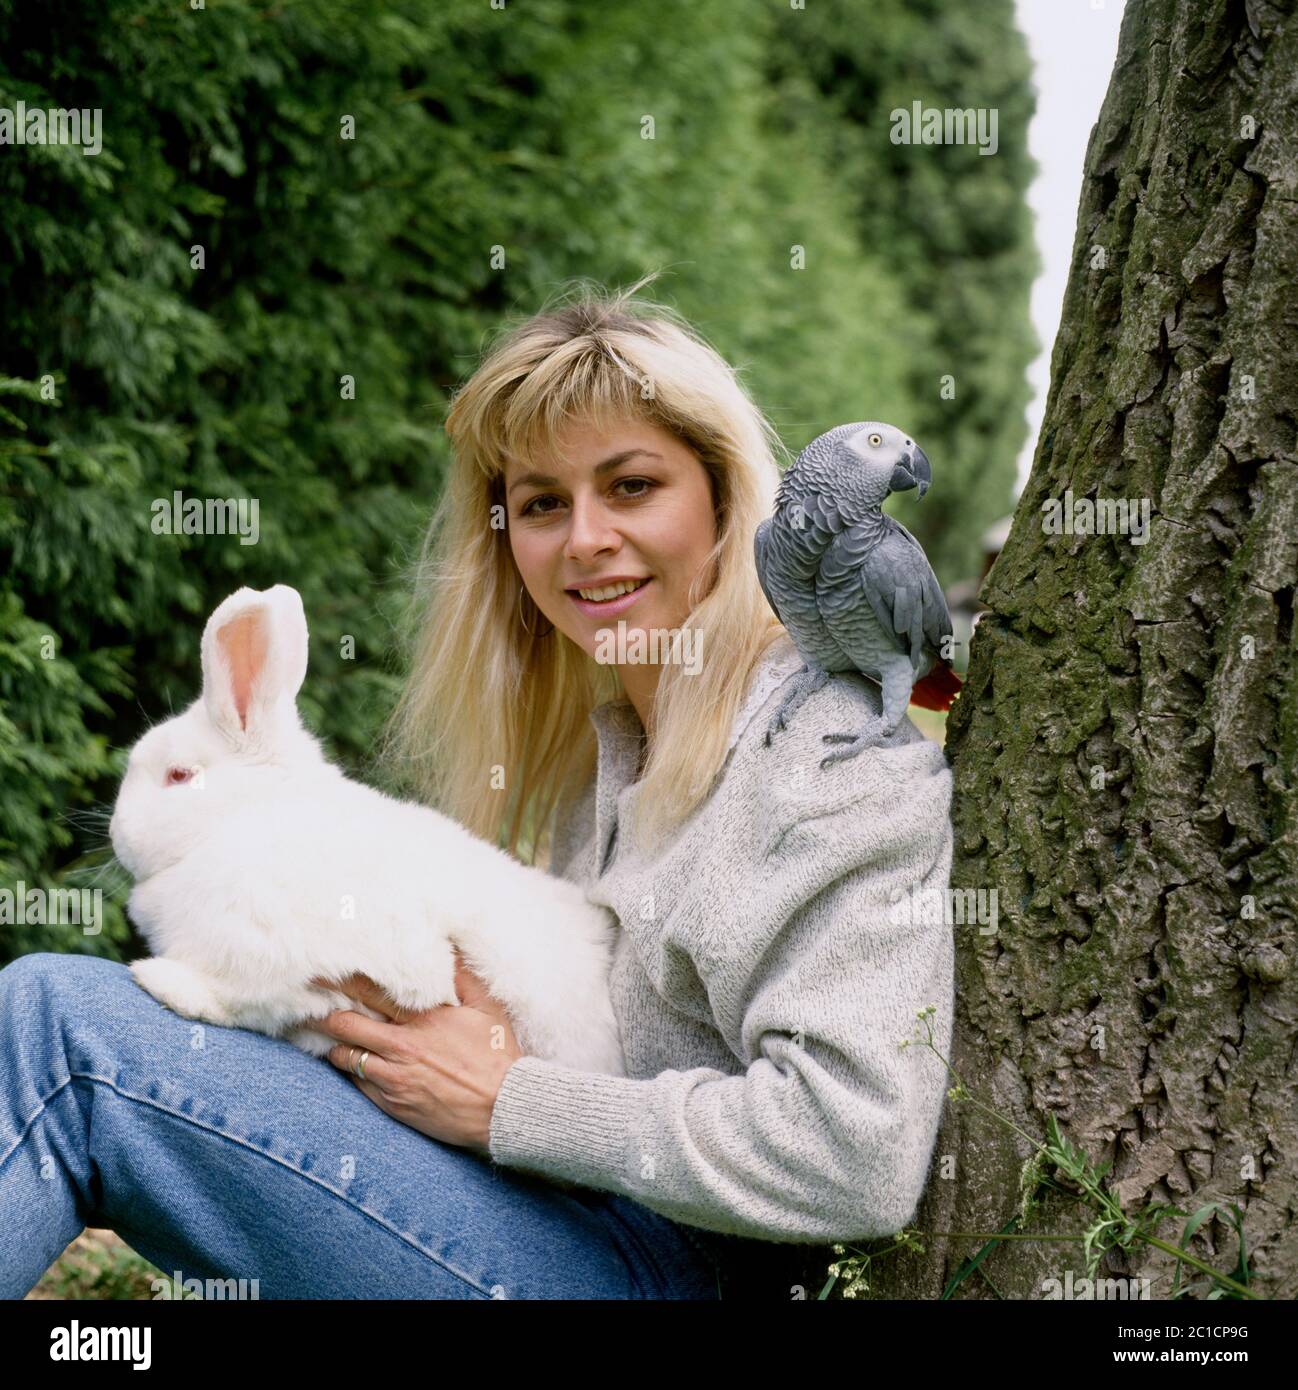 Suzanne Dando, ancienne gymnaste olympique britannique, photographiée à la maison avec son lapin et son perroquet Banque D'Images